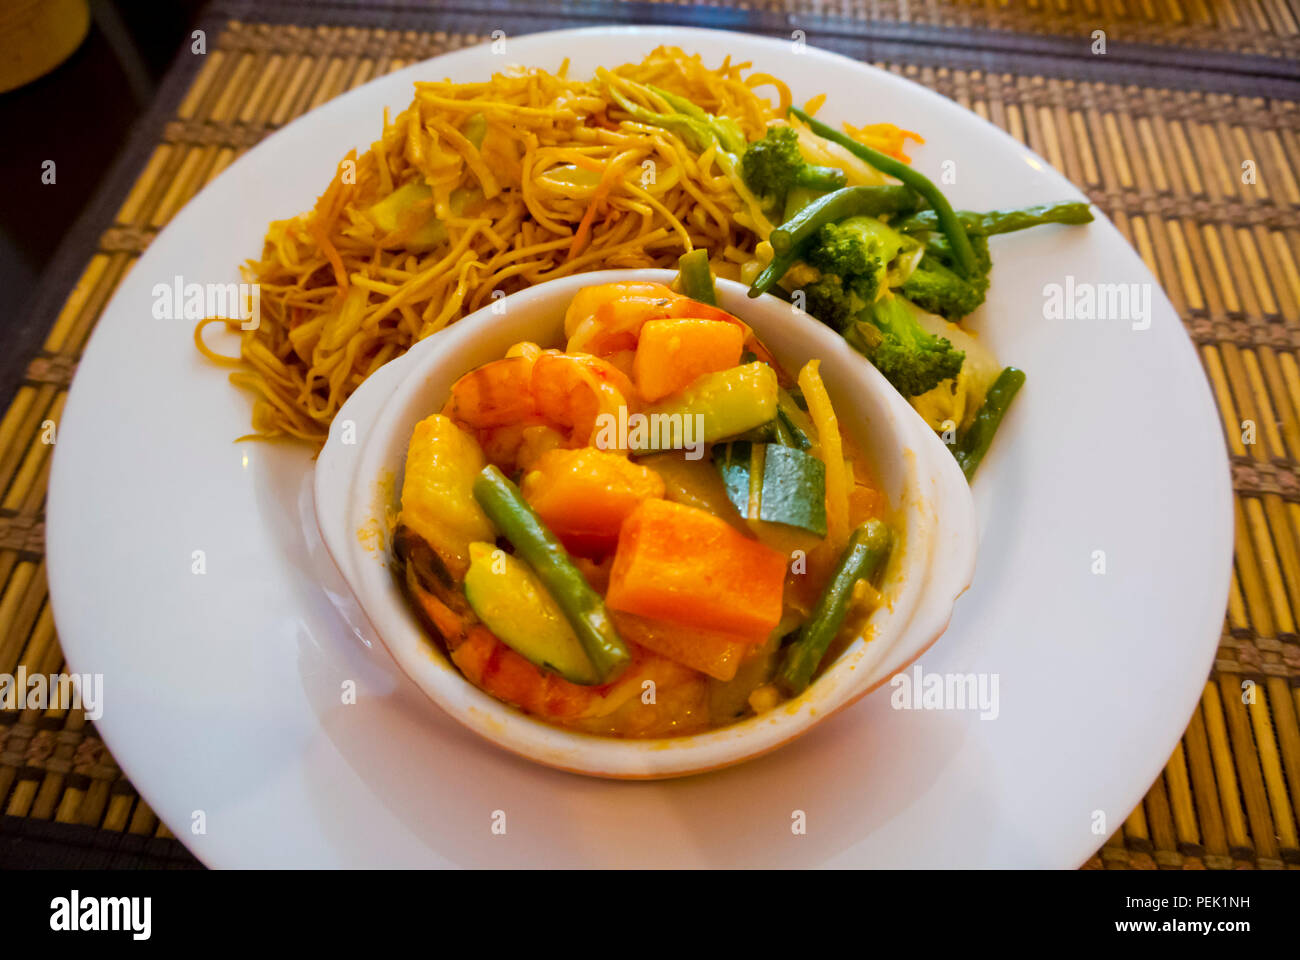 Style asiatique, repas buffet self service avec des nouilles, le brocoli et les légumes et les crevettes ragoût, Barbès, Paris, France Banque D'Images